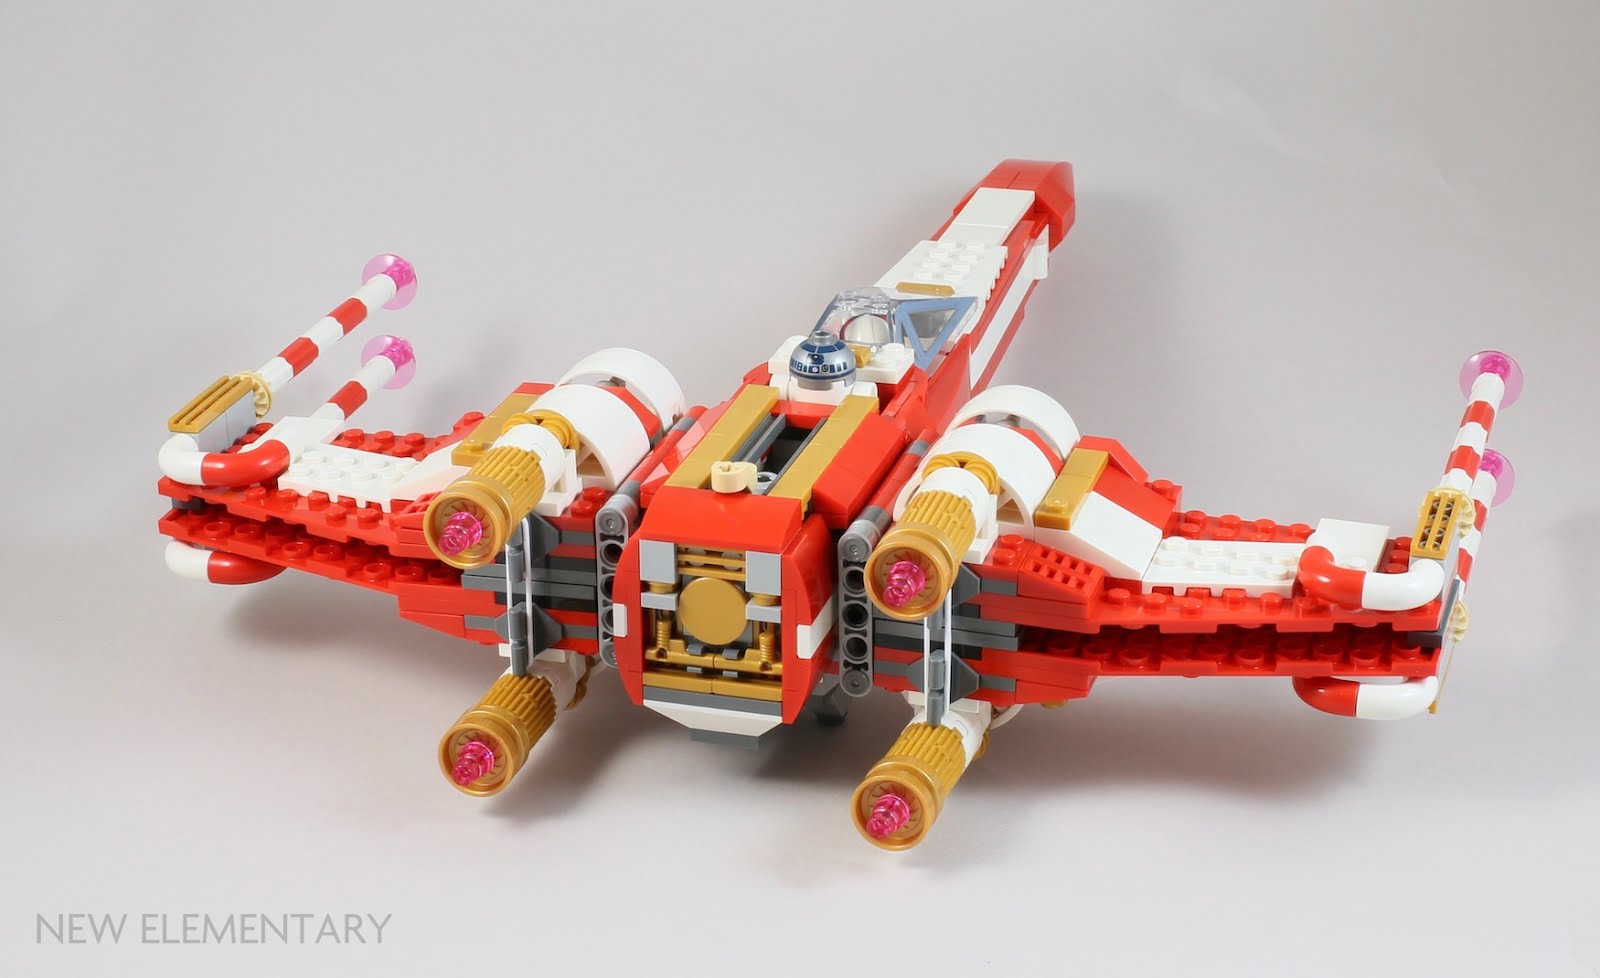 LEGO Christmas X-wing Set 4002019